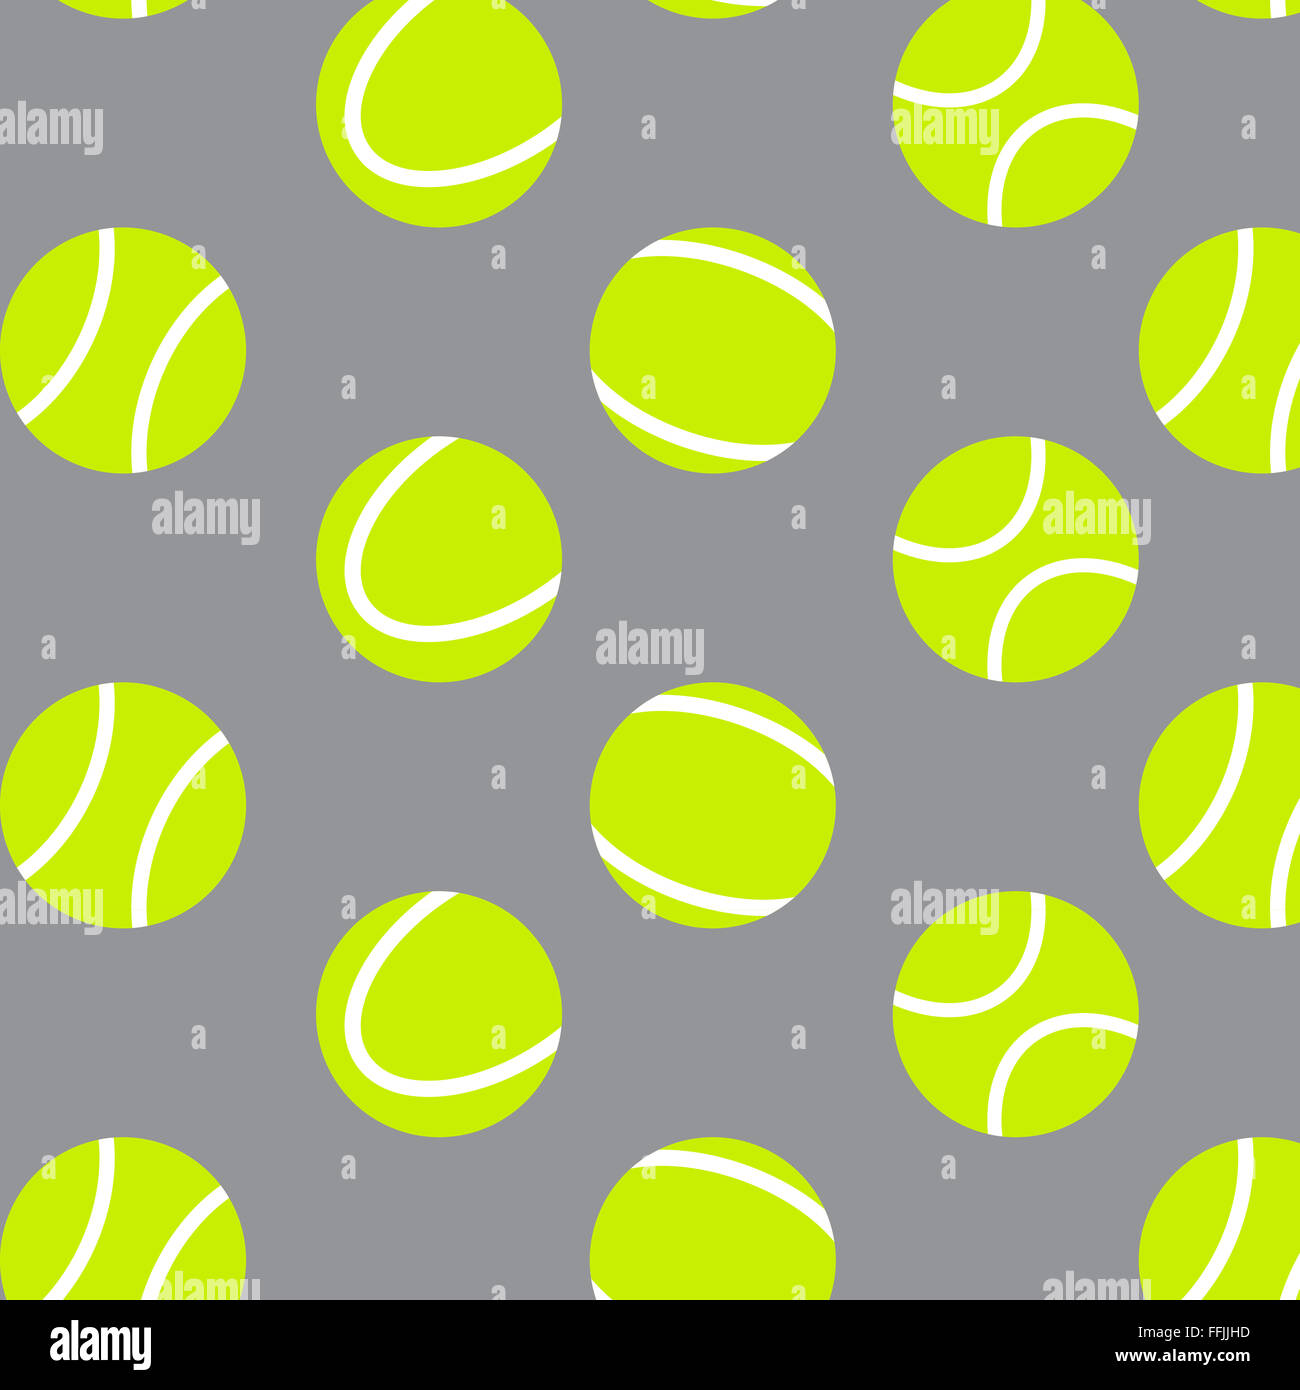 Tennis Ball Musterdesign Hintergrund. Tennis Sport Musterdesign, Kugel-Wiederholung. Vektor abstrakte flaches Design illustratio Stockfoto